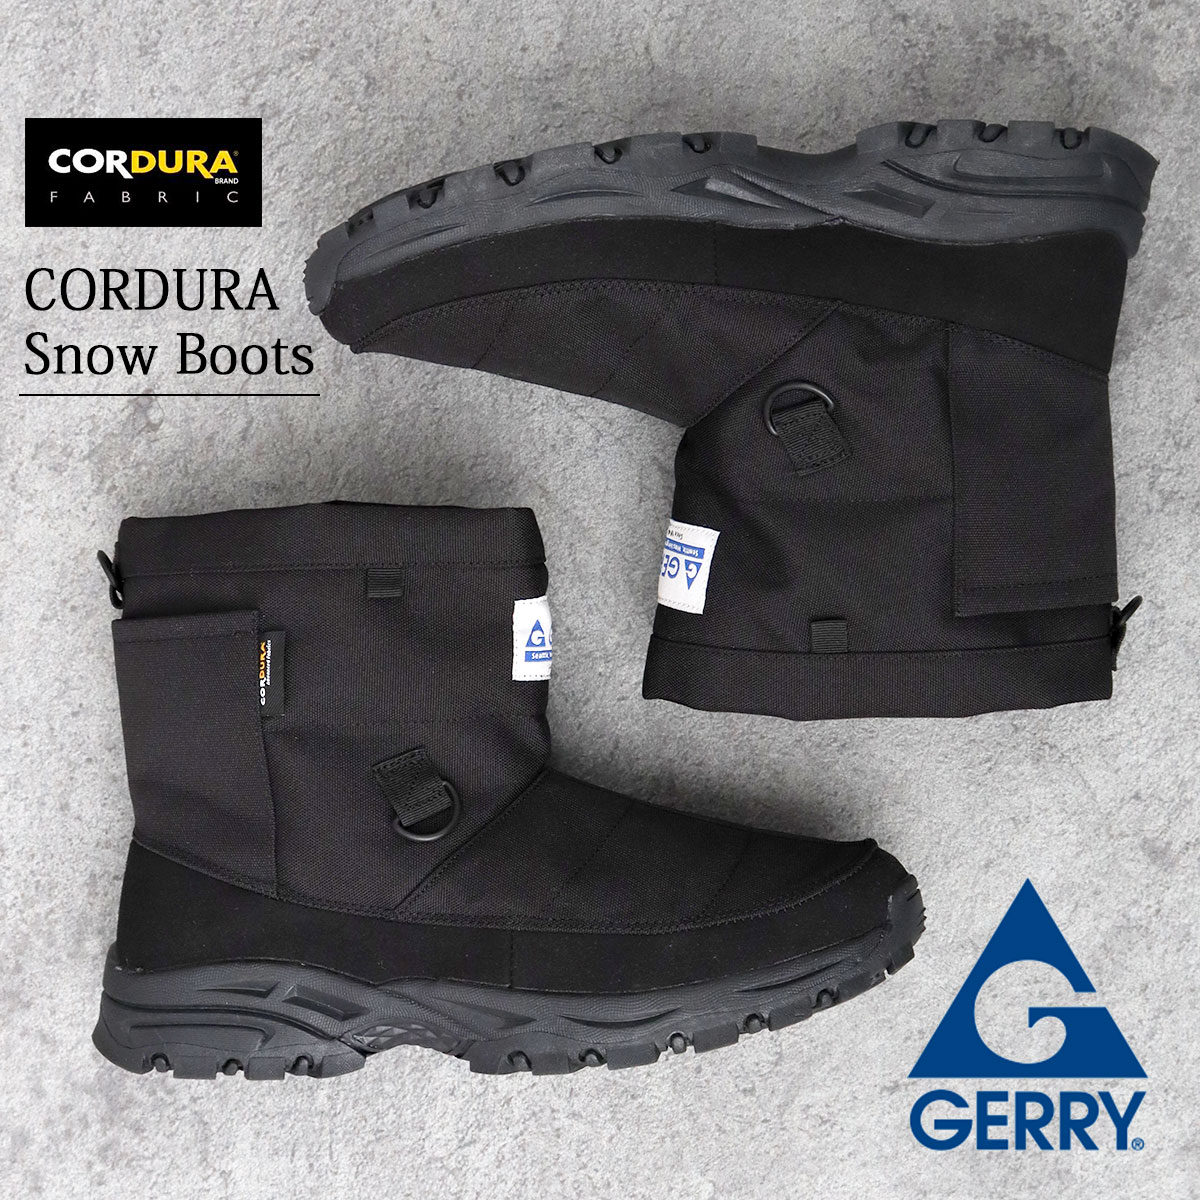 GERRY ジェリー スノーブーツ CORDURA 撥水 スノーシューズ ショート ブーツ 靴 冬 暖かい メンズ シンプル BLACK ラバーソール 軽量 アウトドア